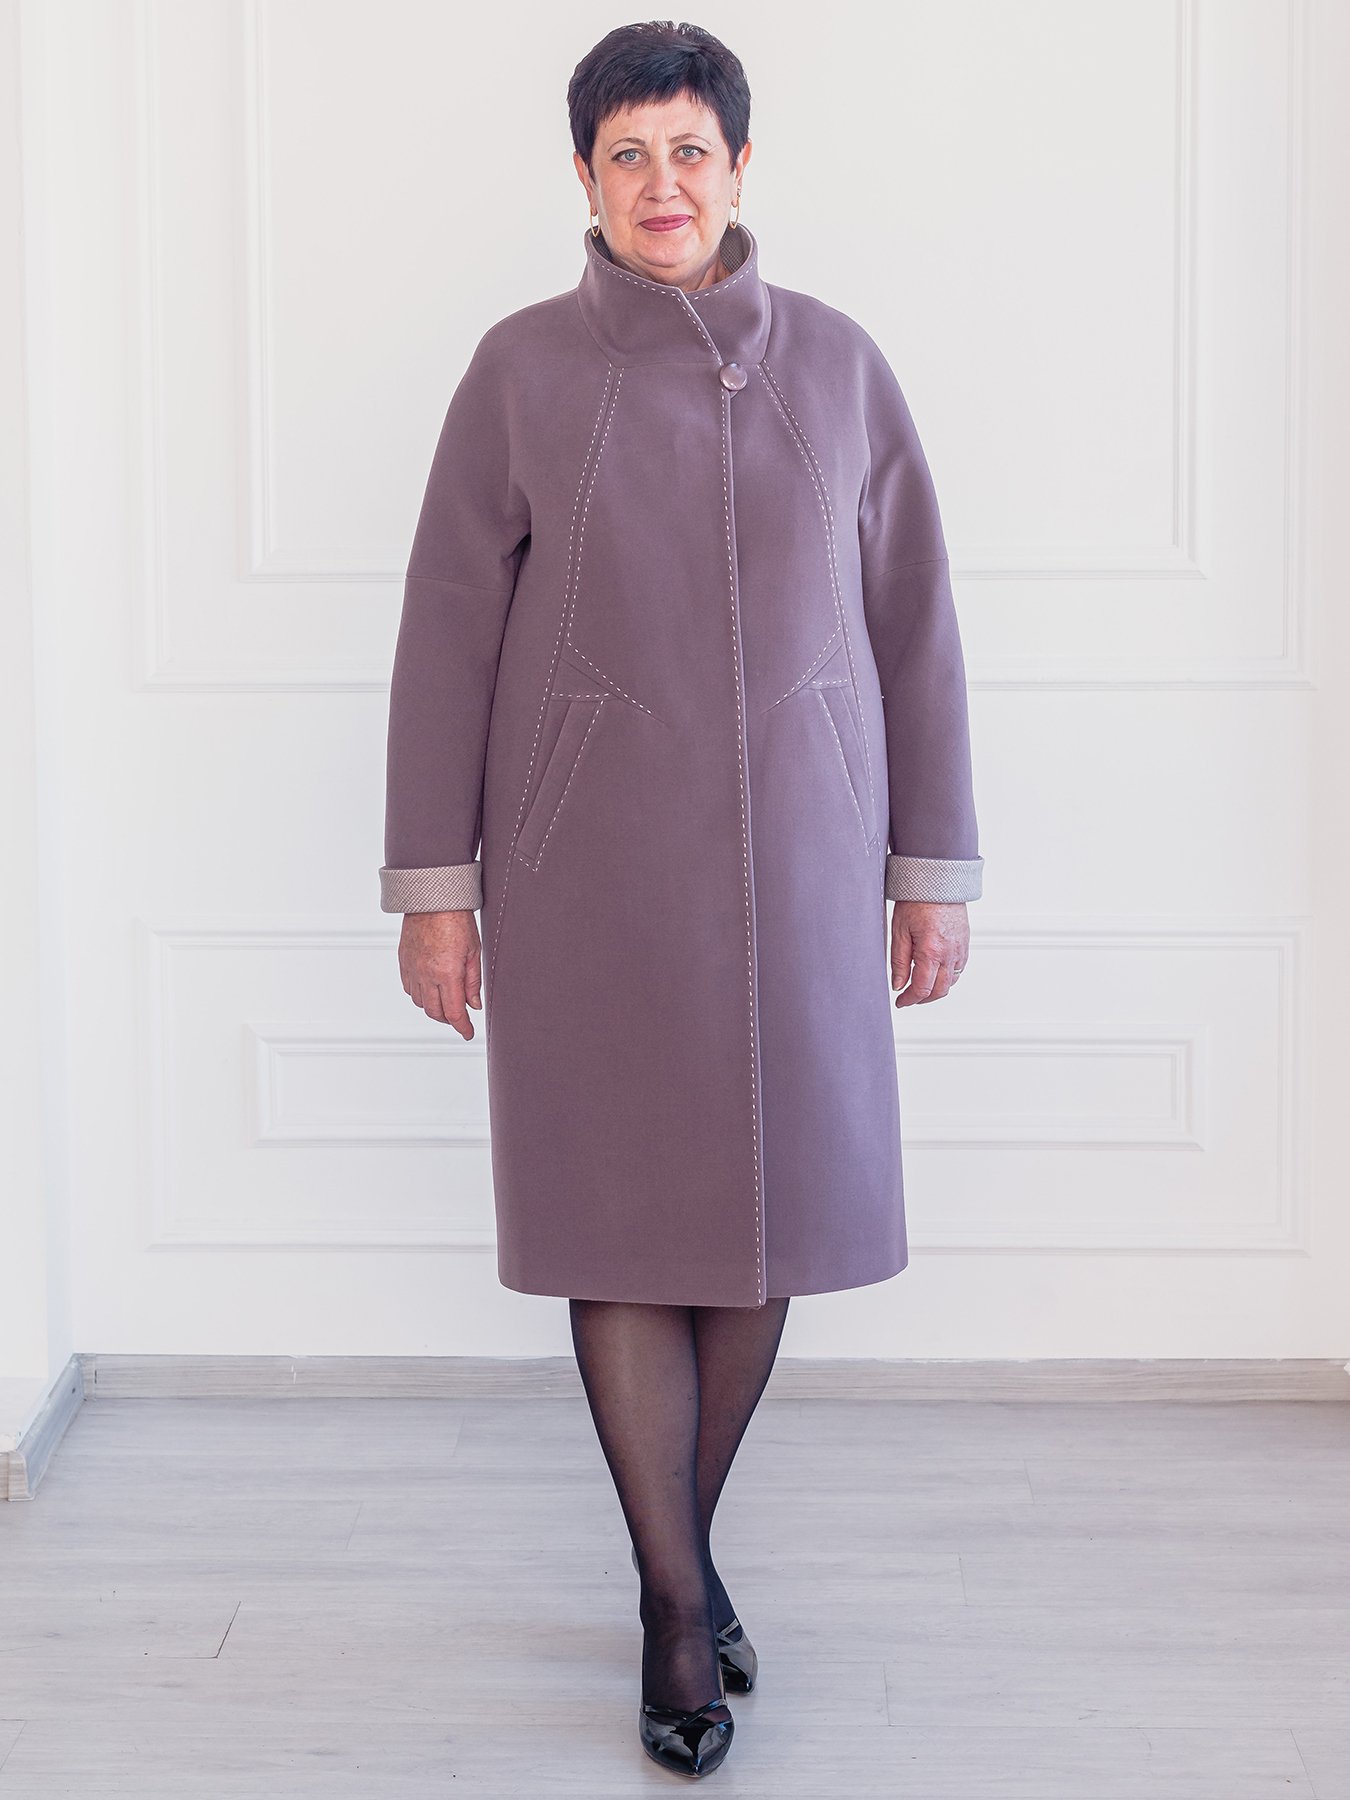 Утеплить демисезонное пальто. АВИКО пальто. Пальто женское АВИКО модель 1949. Реклама пальто АВИКО 2019.